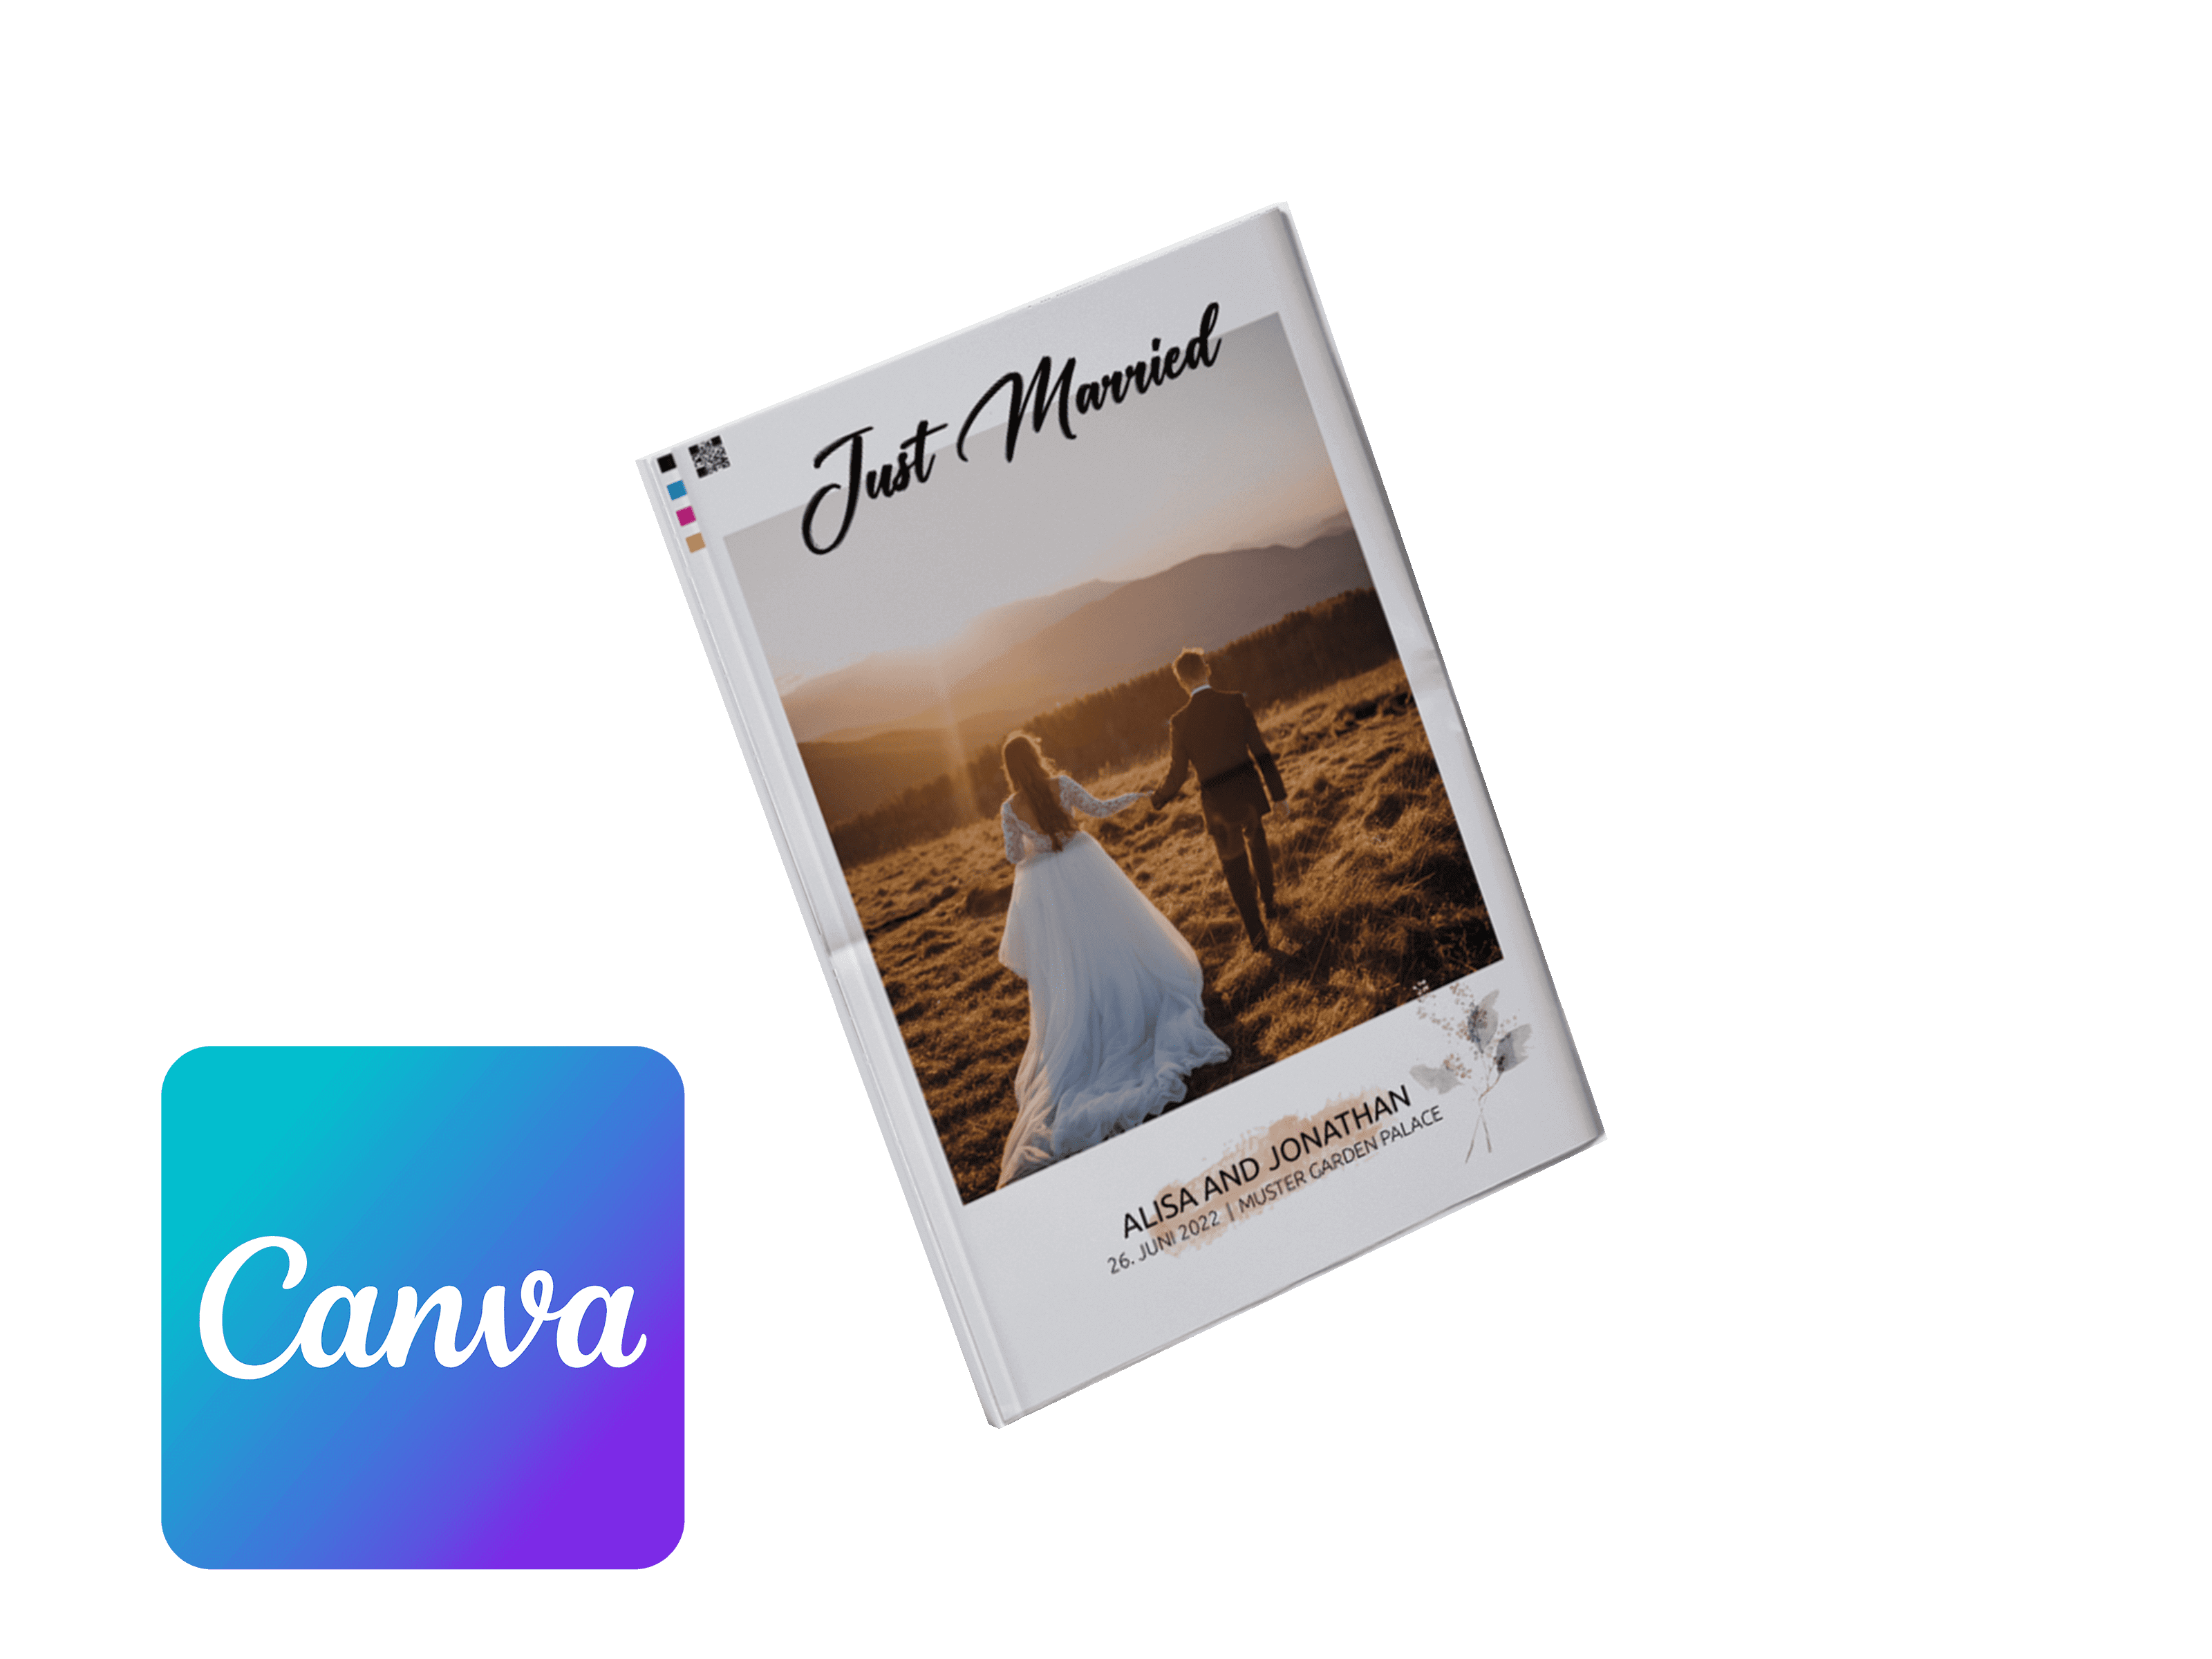 Hochzeitszeitung online mit Canva gestalten